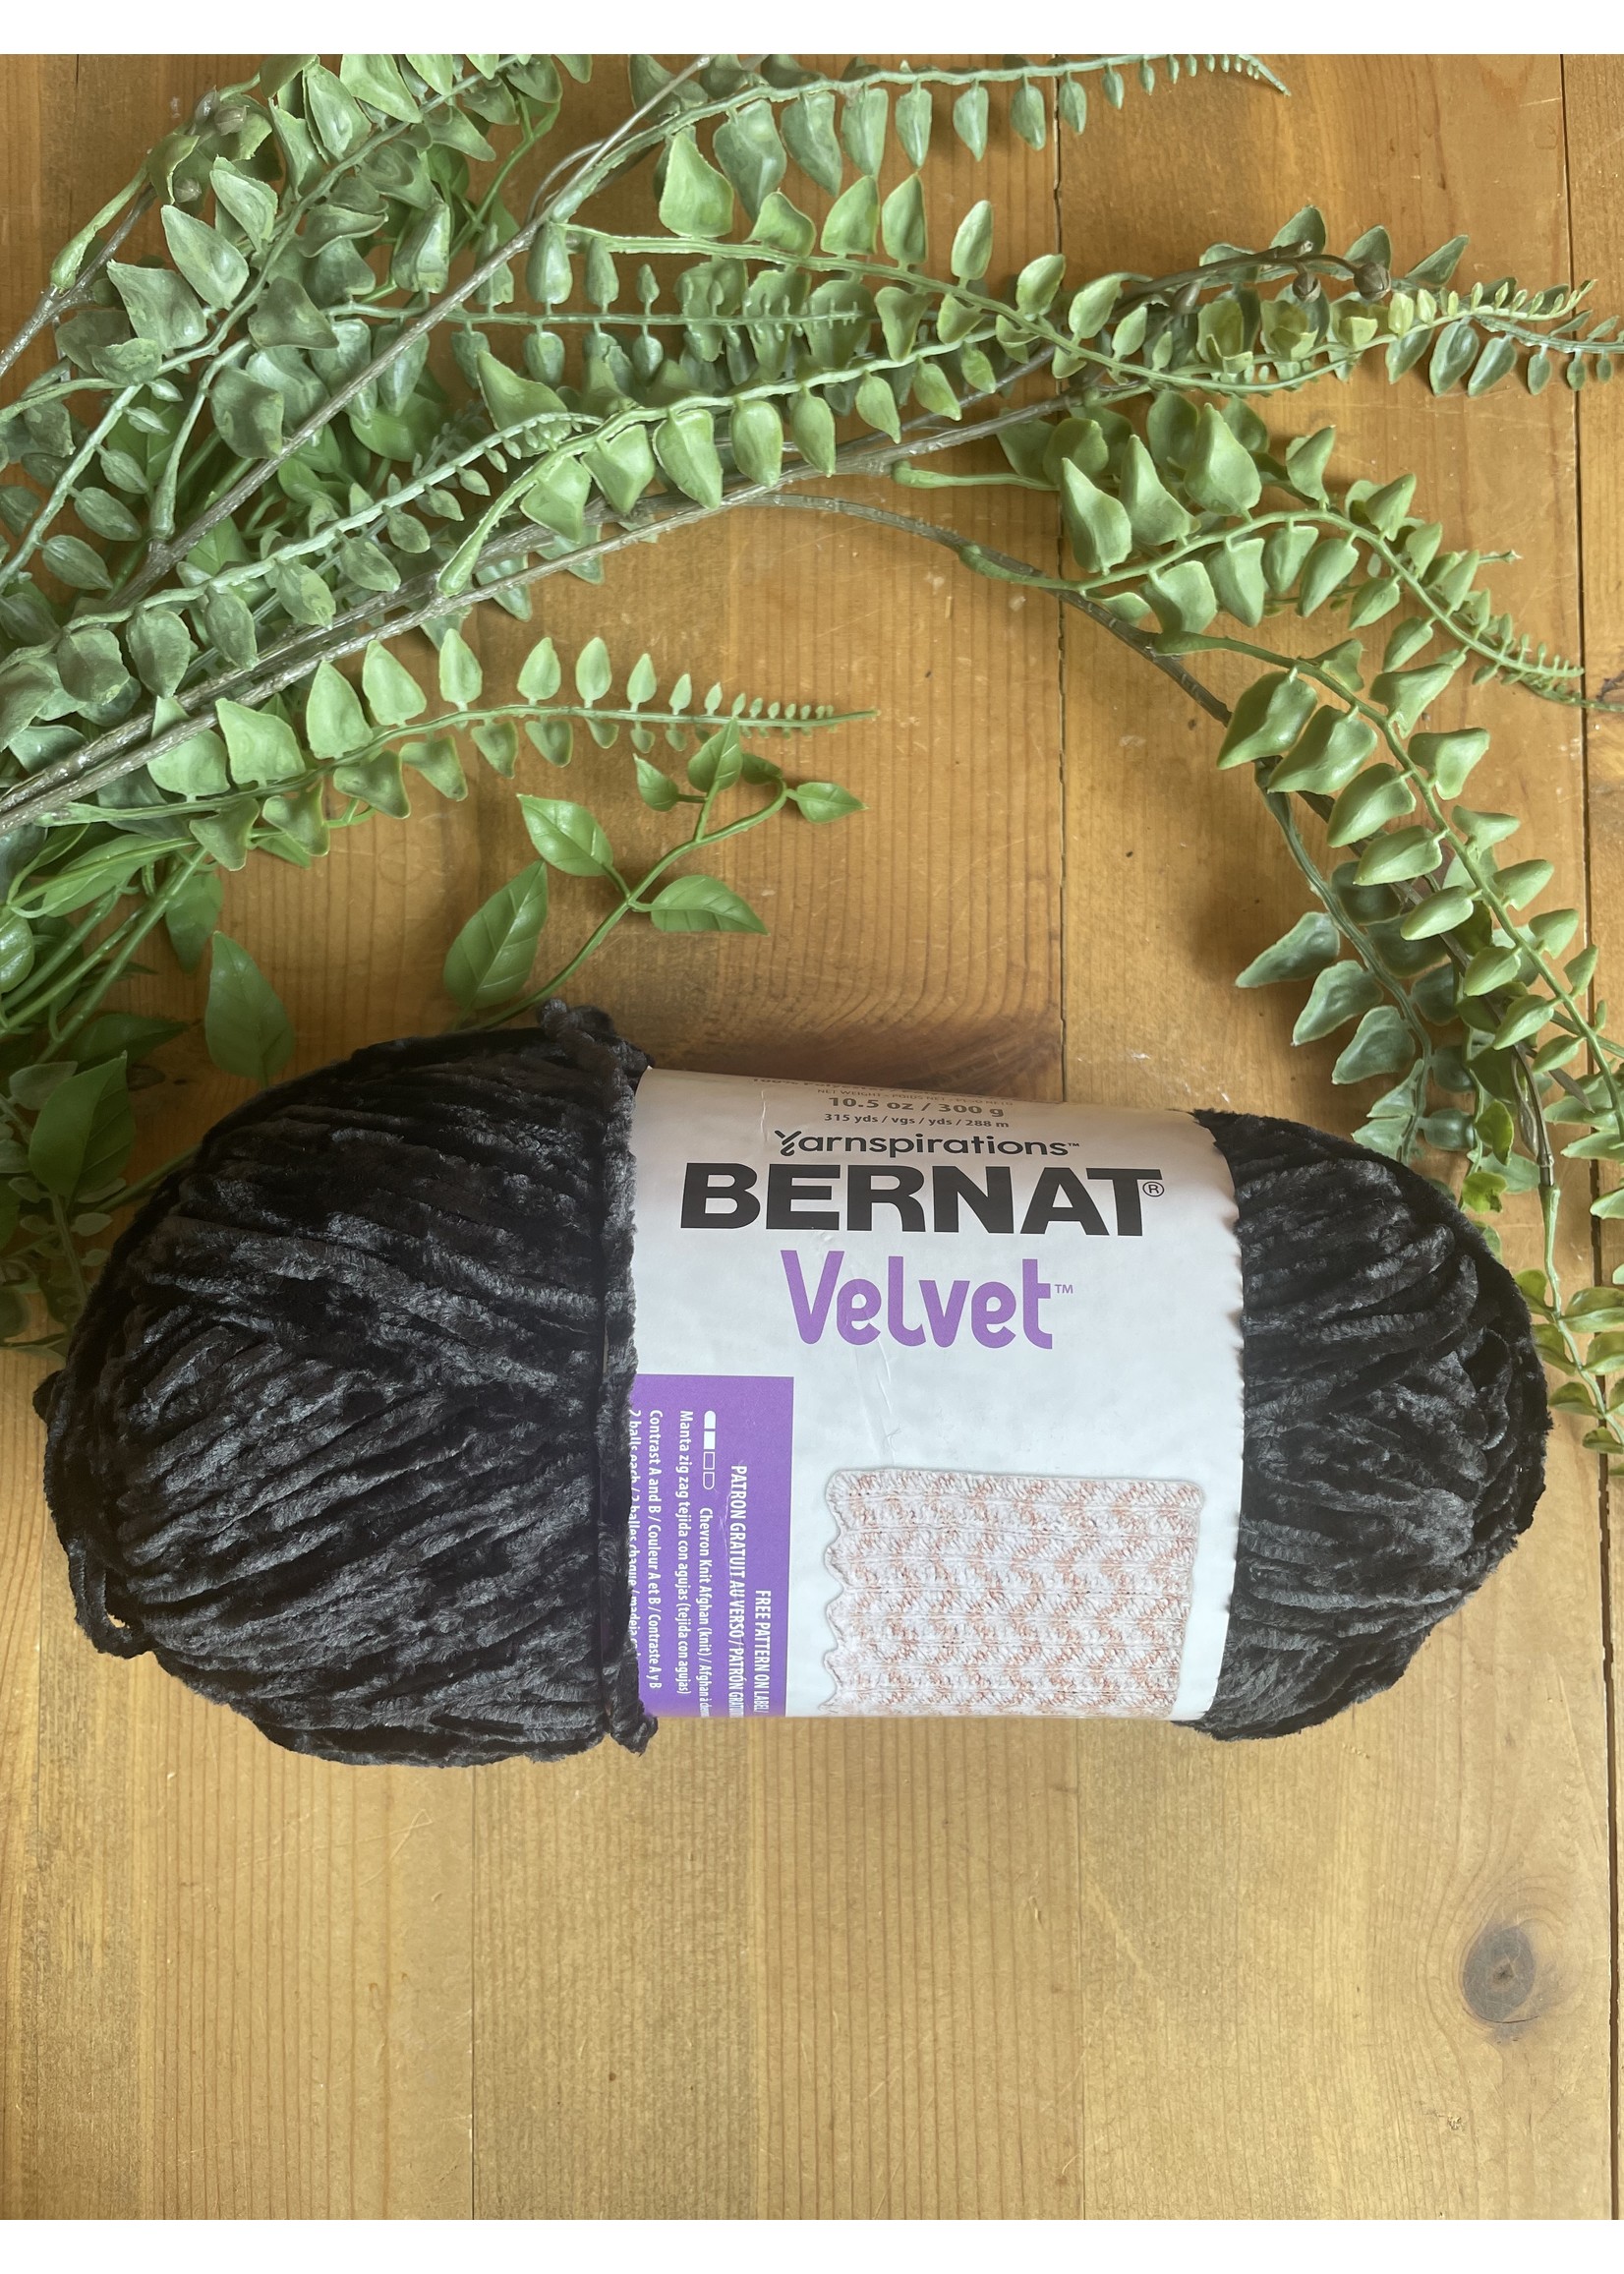 Velvet Yarn, Yarnspirations' BERNAT Velvet Review